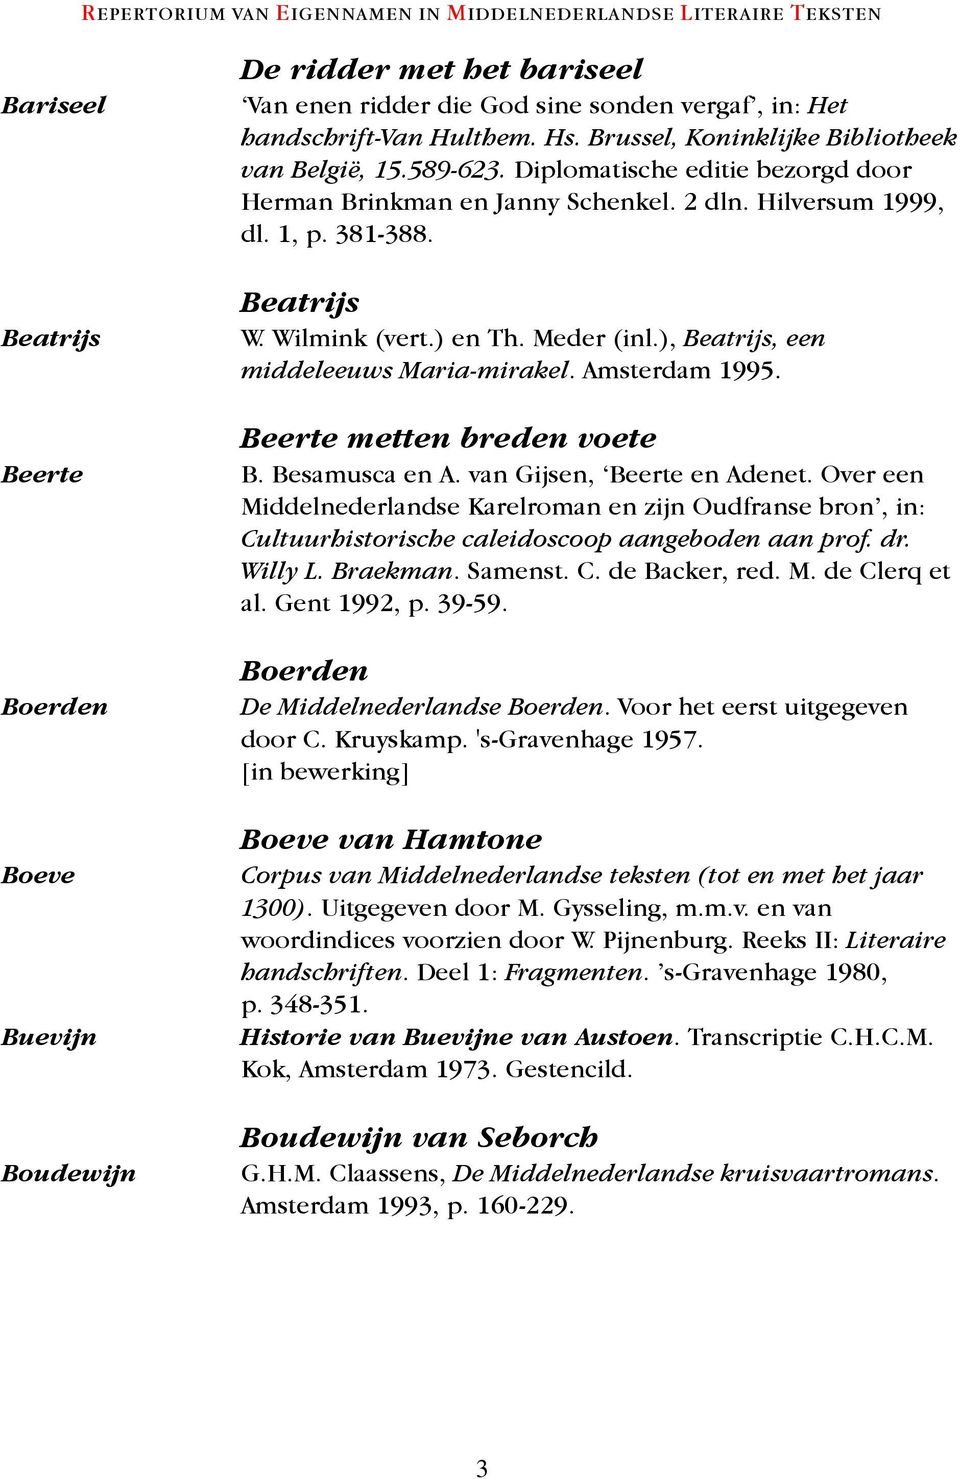 ) en Th. Meder (inl.), Beatrijs, een middeleeuws Maria-mirakel. Amsterdam 1995. Beerte metten breden voete B. Besamusca en A. van Gijsen, Beerte en Adenet.